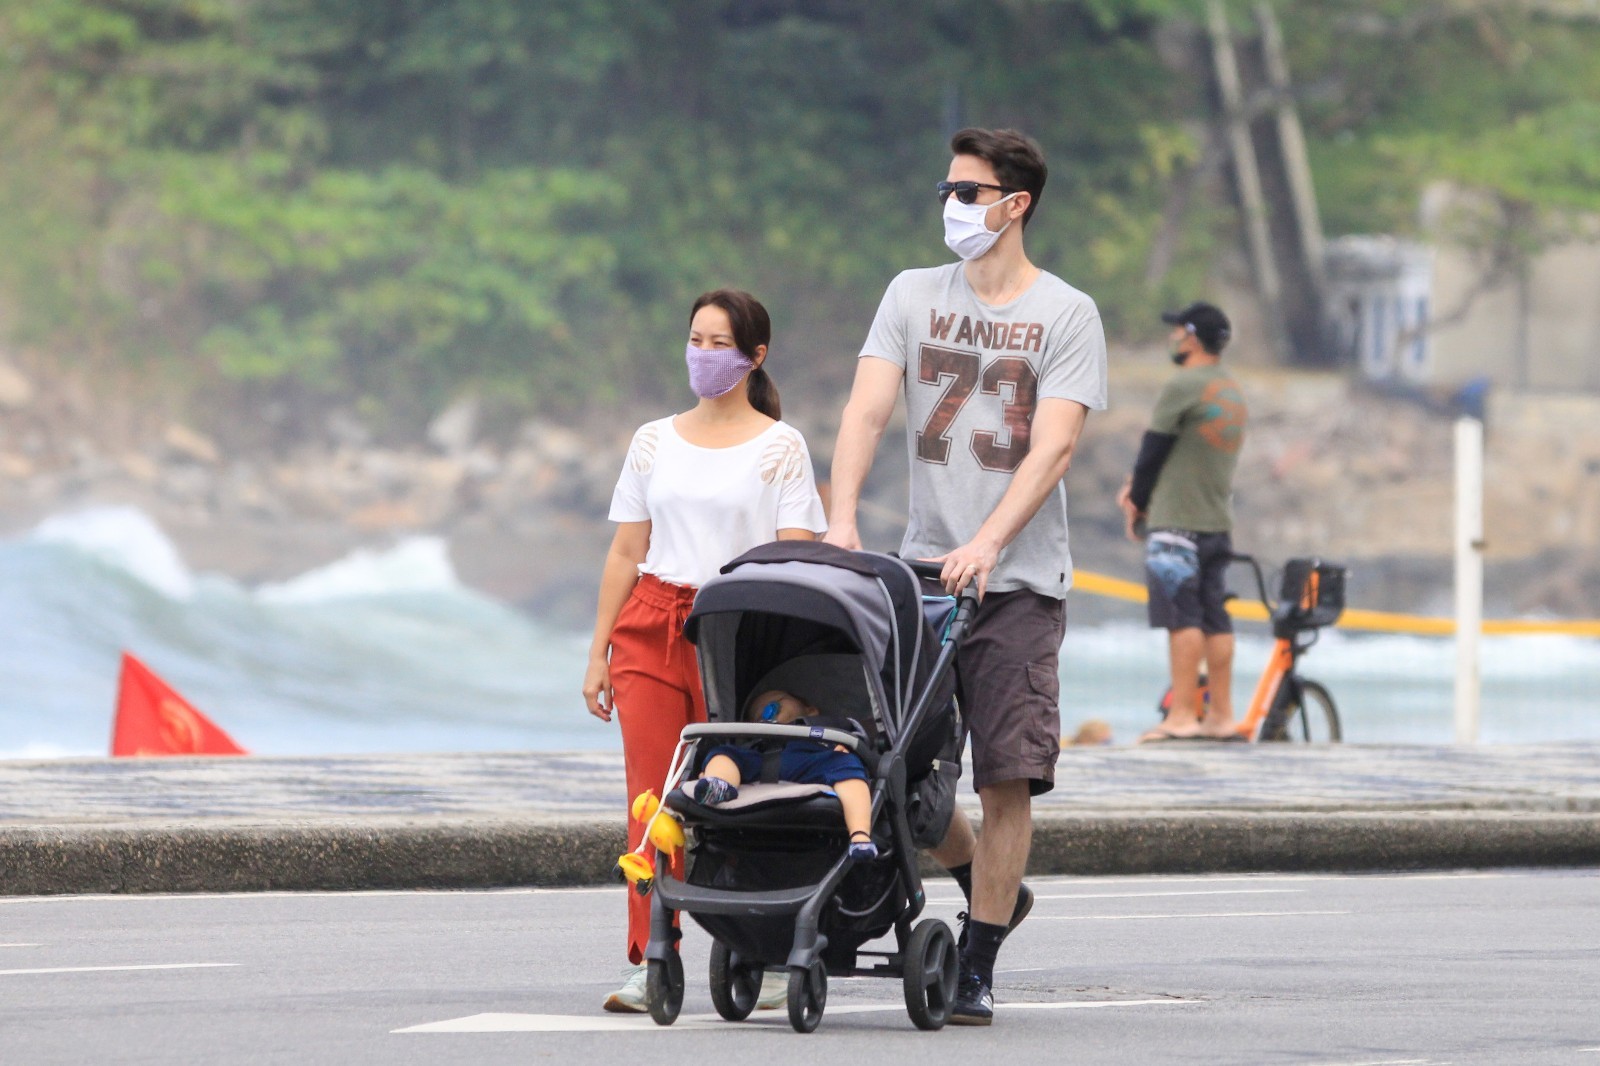 Geovanna Tominaga passeia com marido e filho na orla carioca (Foto: JC Pereira/AgNews)